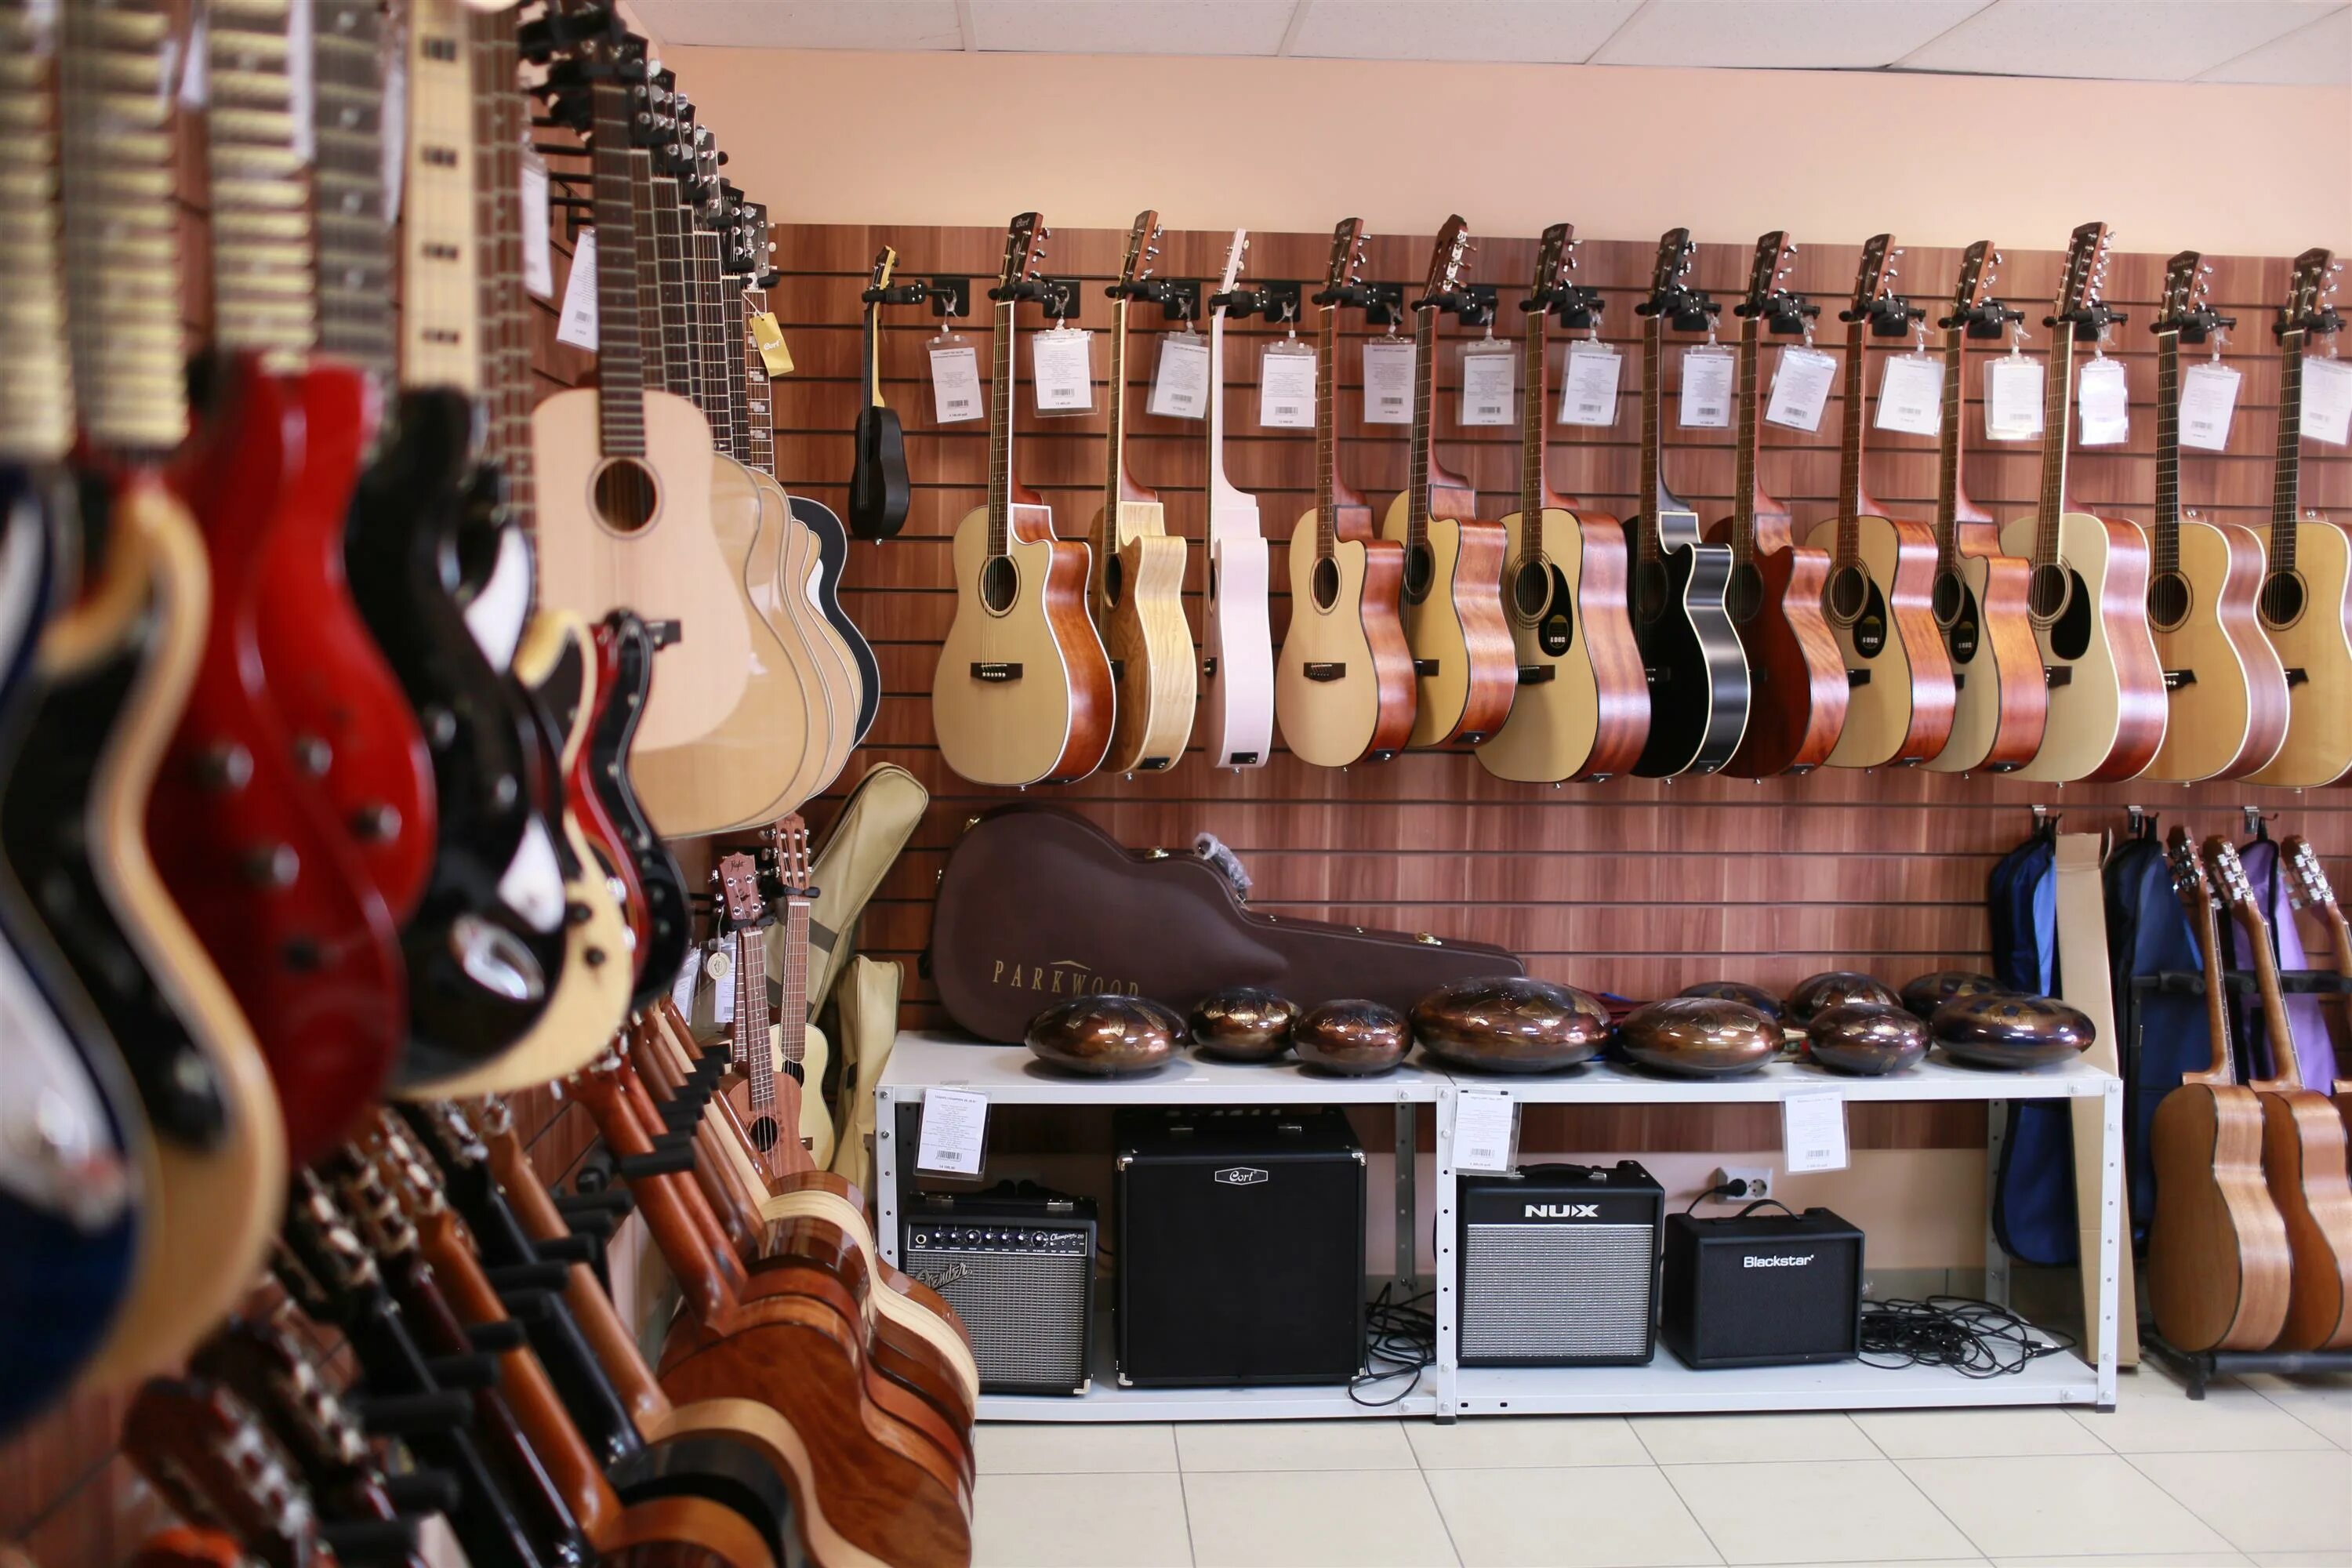 Купить гитару в магазине гитарный клуб. Гитарный магазин. Музыкальный магазин. Магазин музыкальных инструментов. Музыкальные товары.